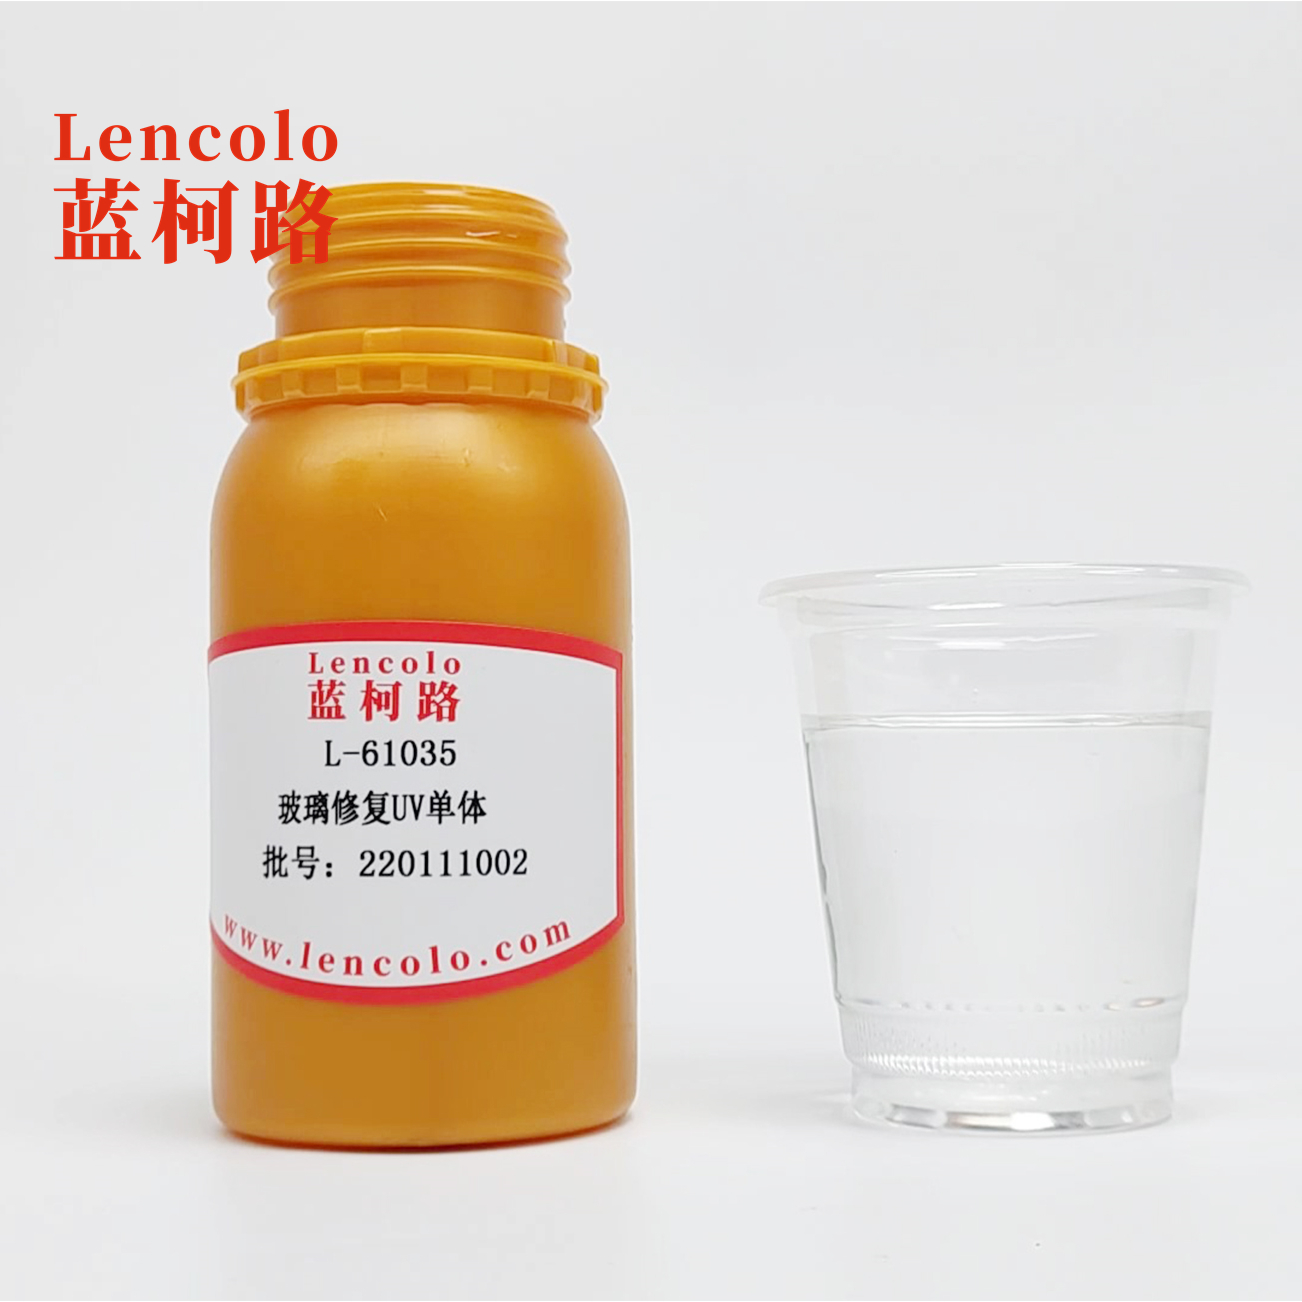 L-61036(LMA) Lauryl Methacrylate